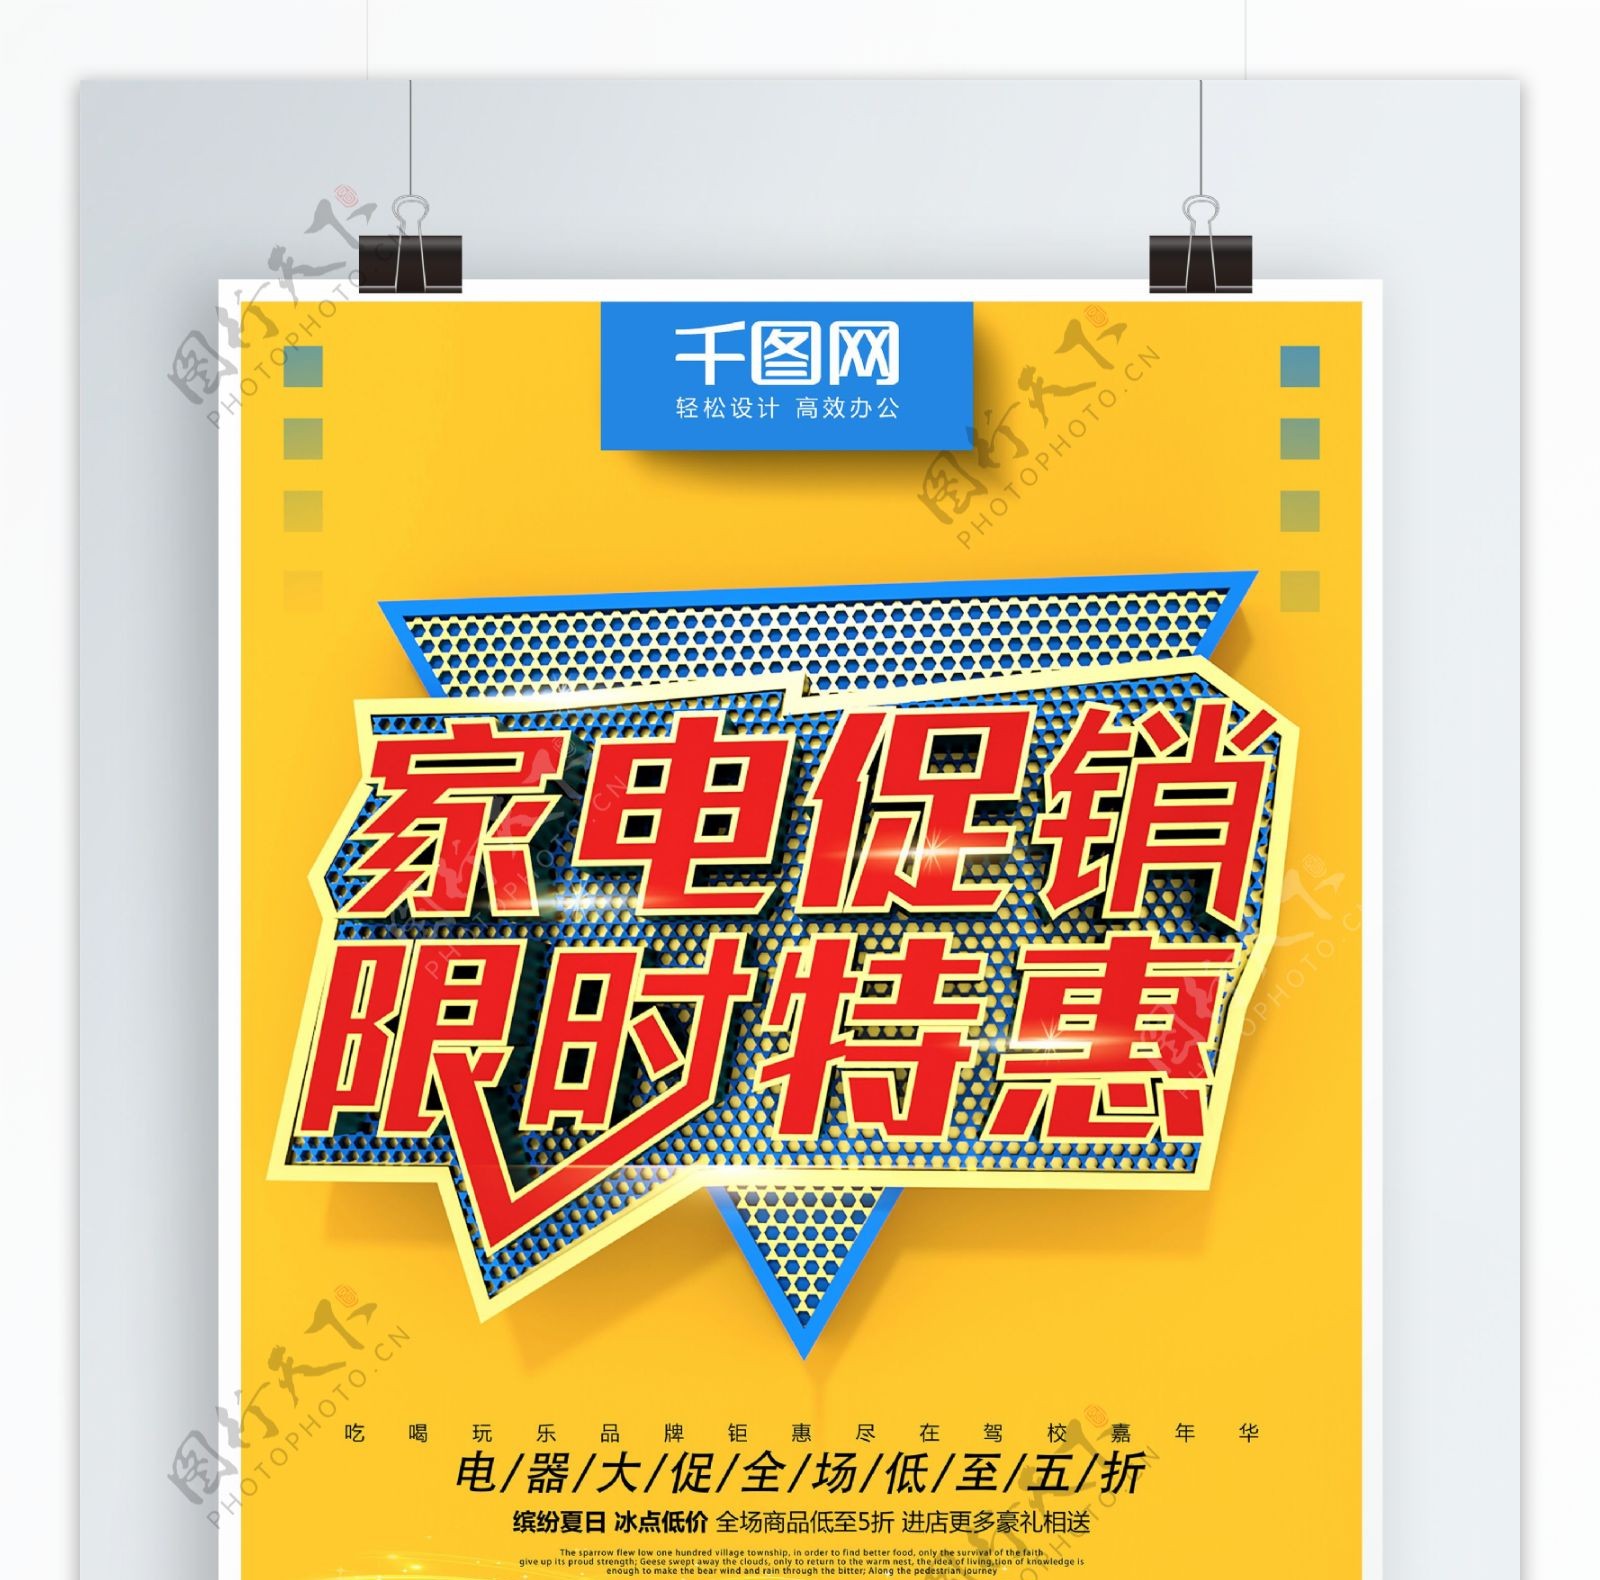 C4D黄色大气简约电器促销海报设计